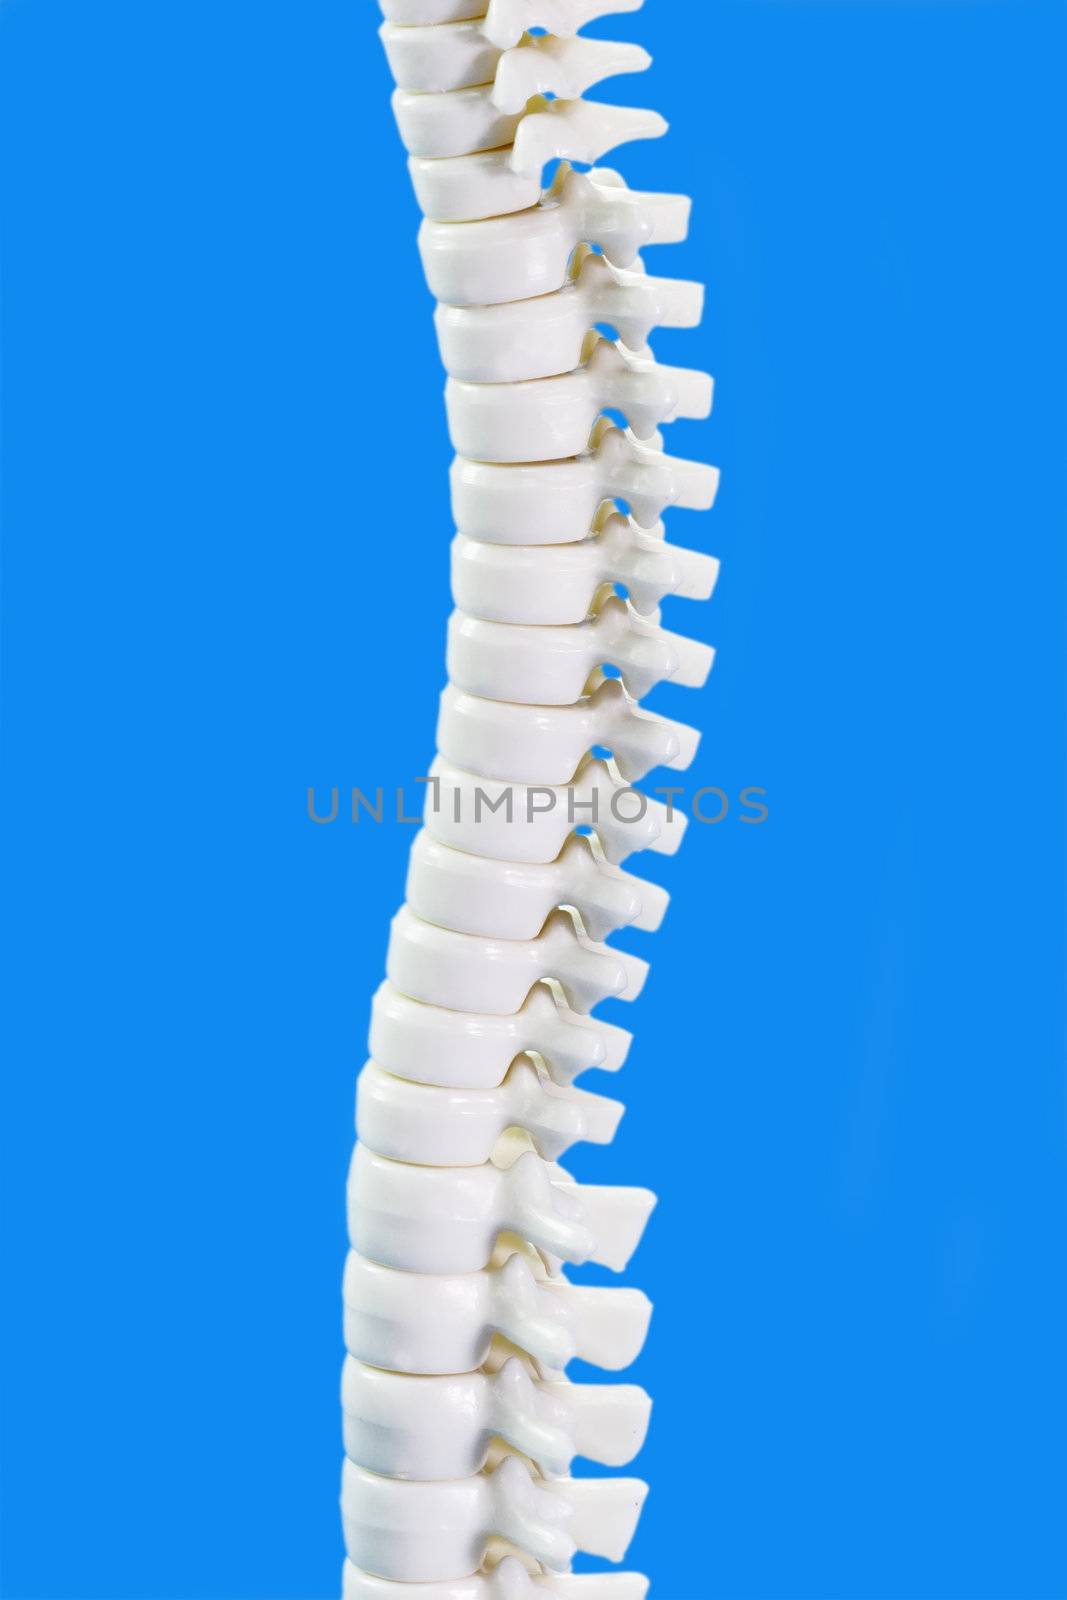 Human backbone model in detail on blue background